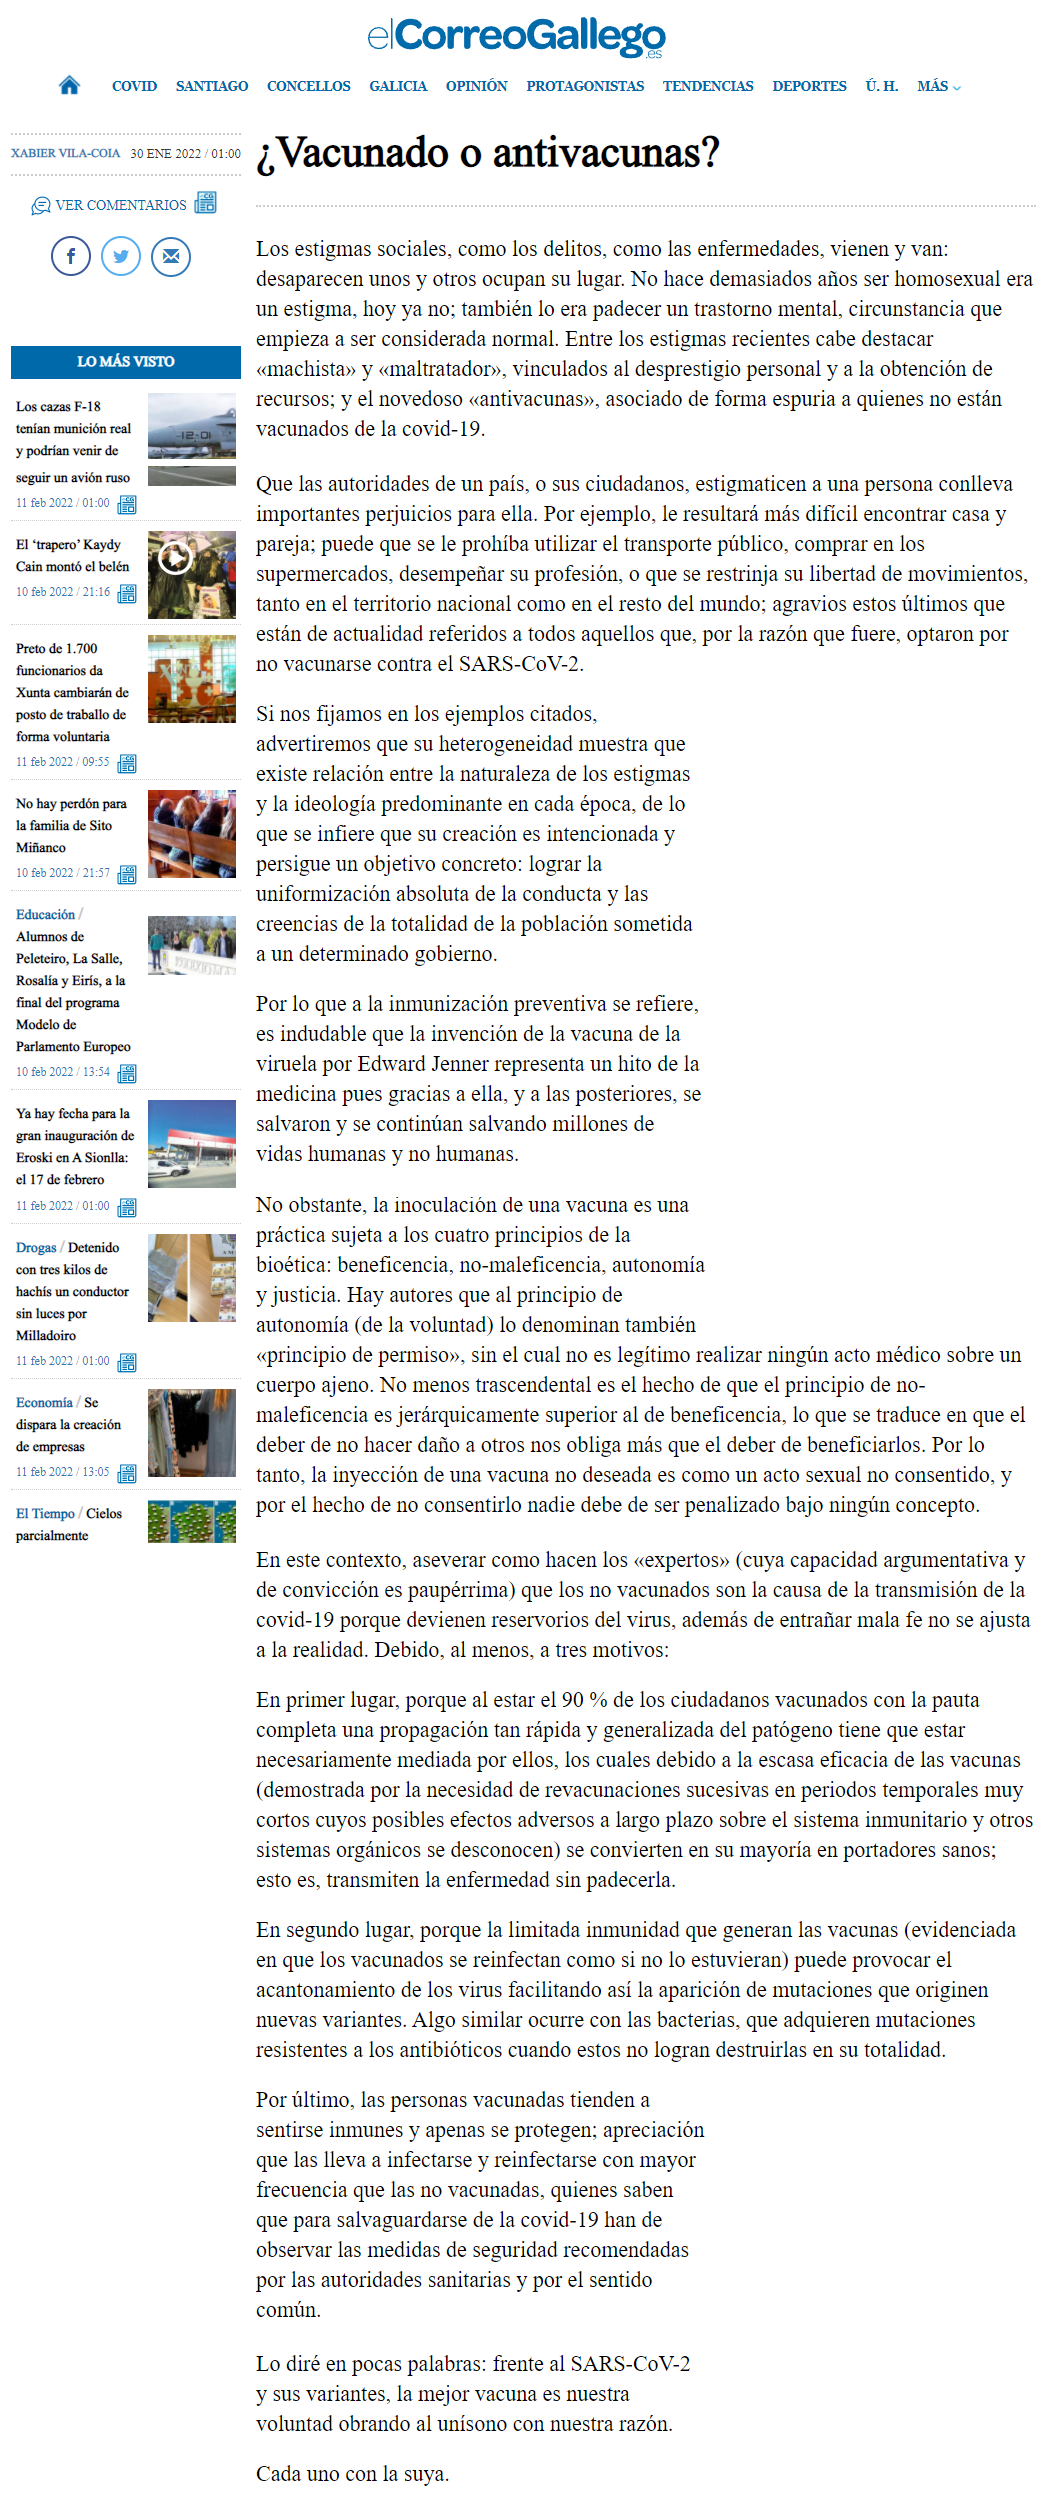 Artigo de Xabier Vila-Coia titulado "¿Vacunado o antivacunas?", publicado en "El Correo Gallego" e outros xornais o 30 de xaneiro do 2022.